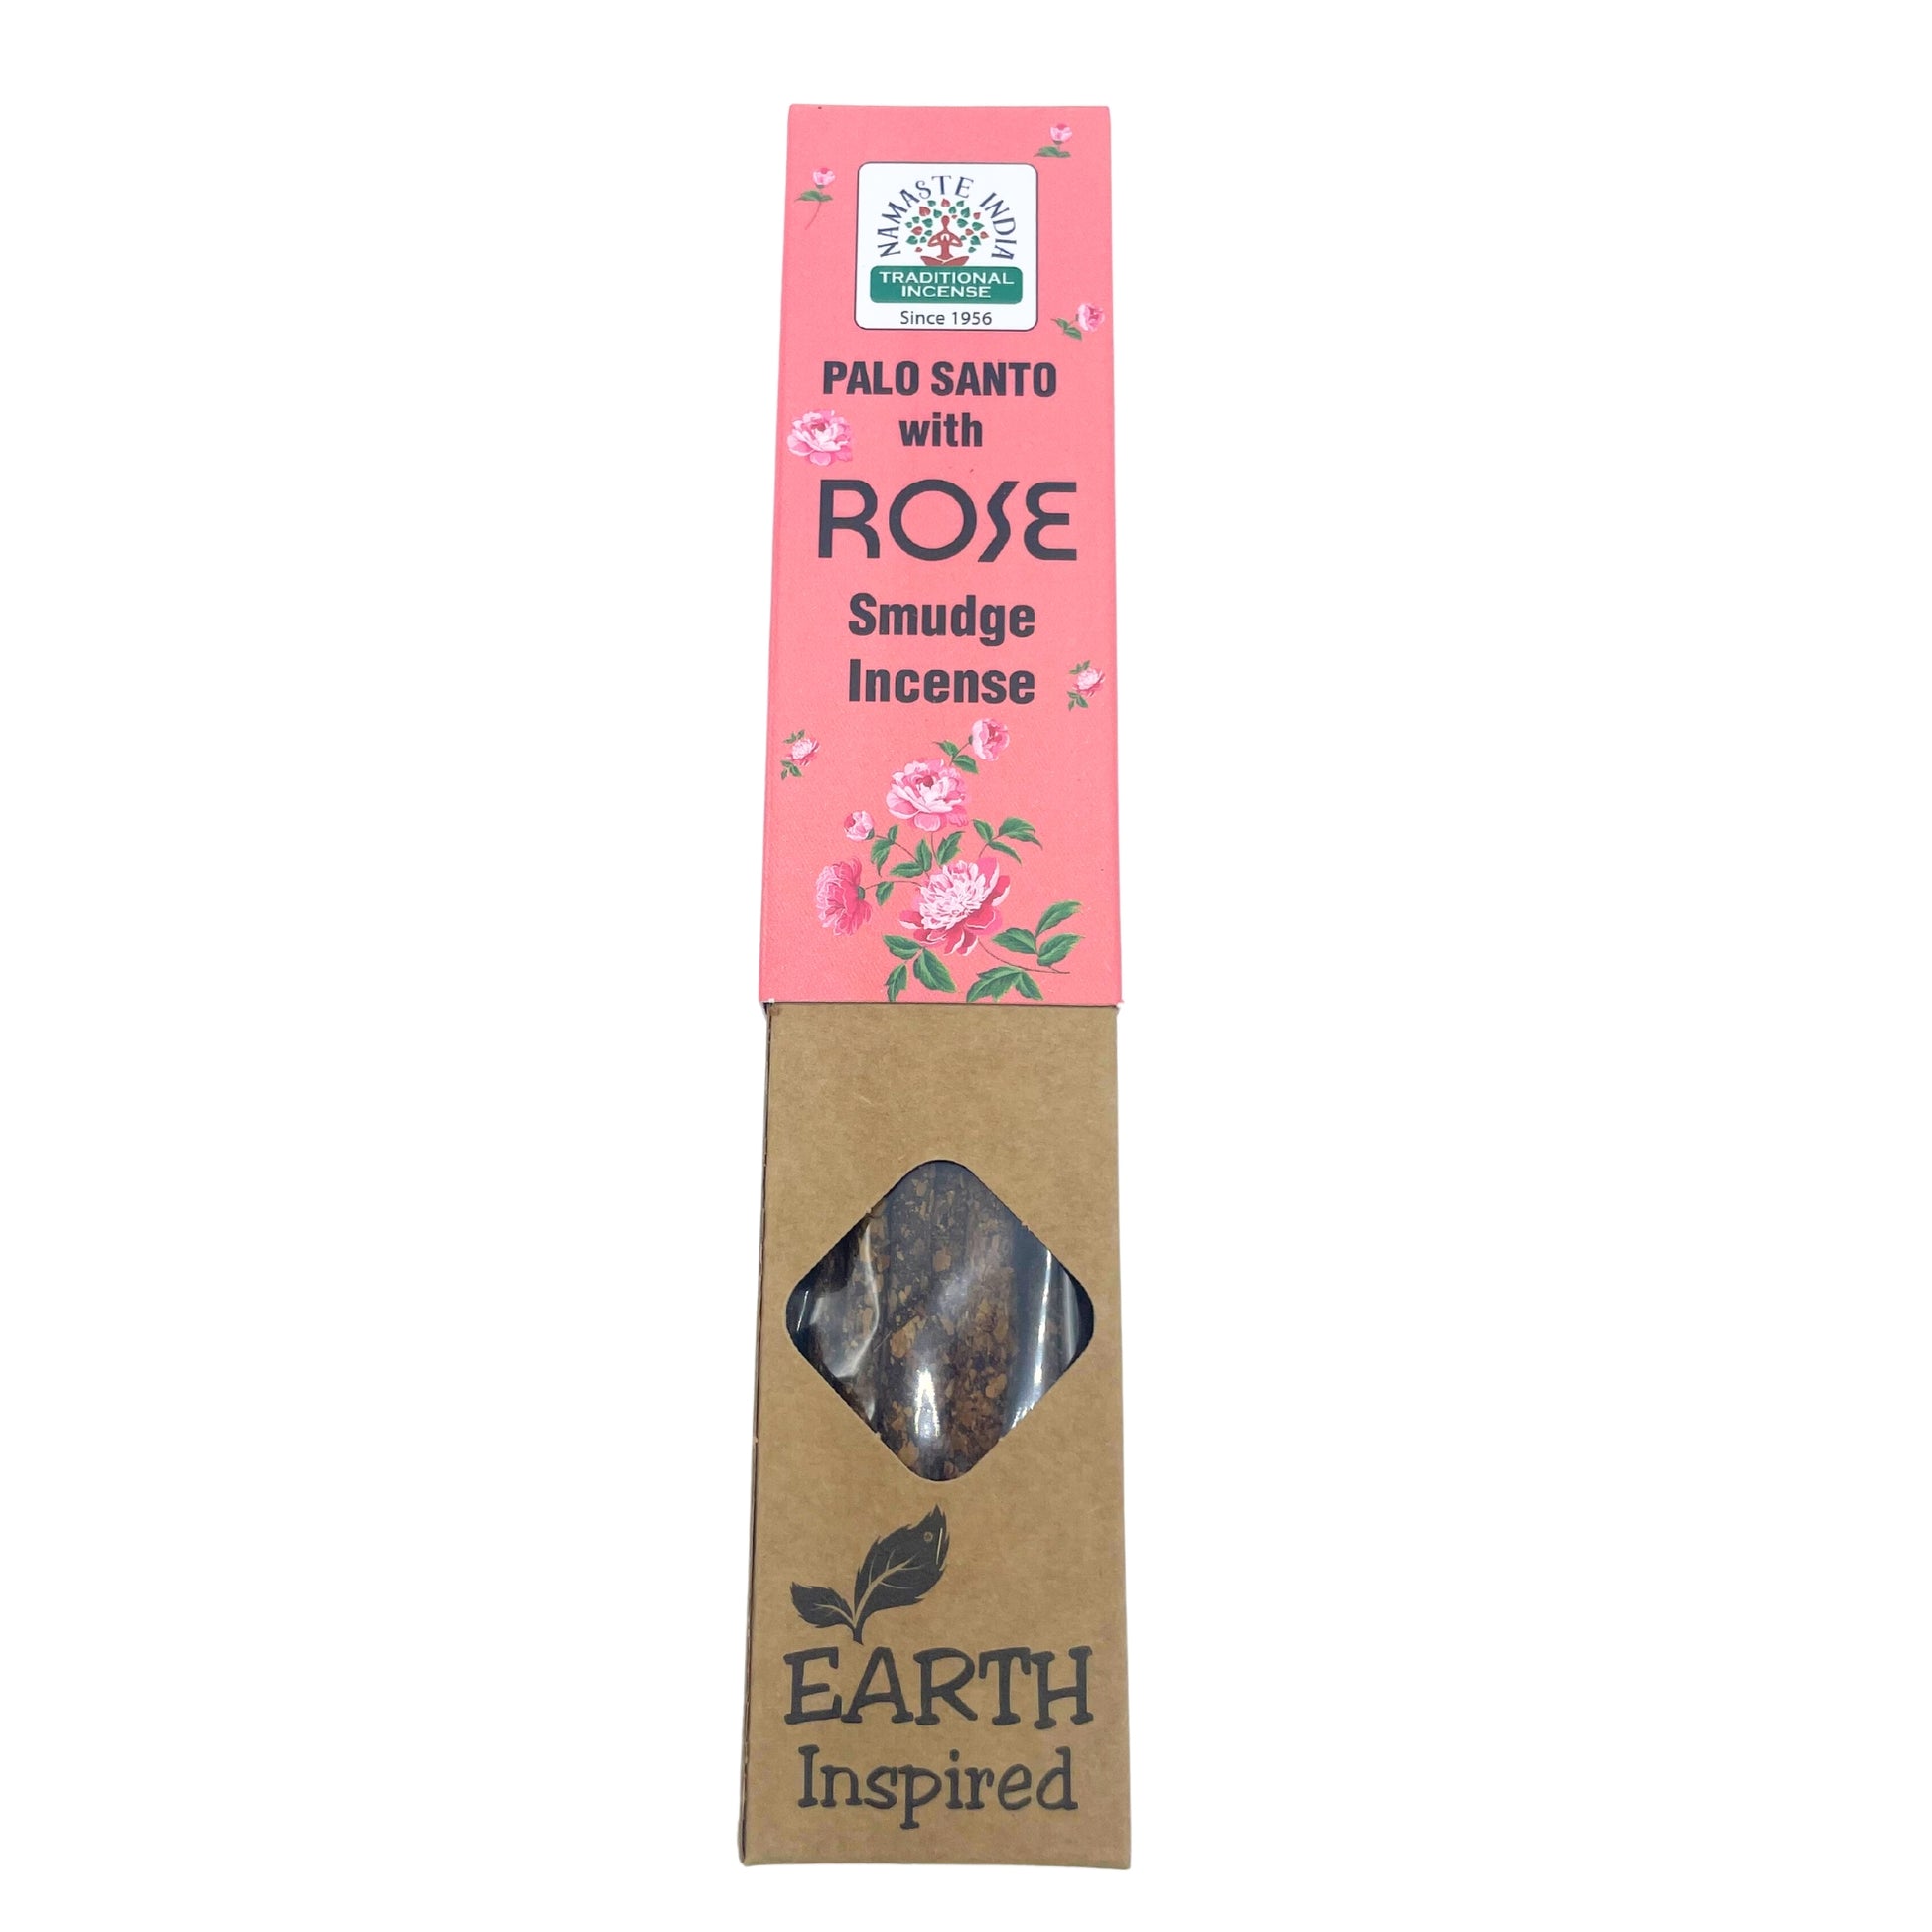 Paquete de incienso de Palo Santo con rosas en paquete de color rosa y un sello que dice inspirado en la tierra